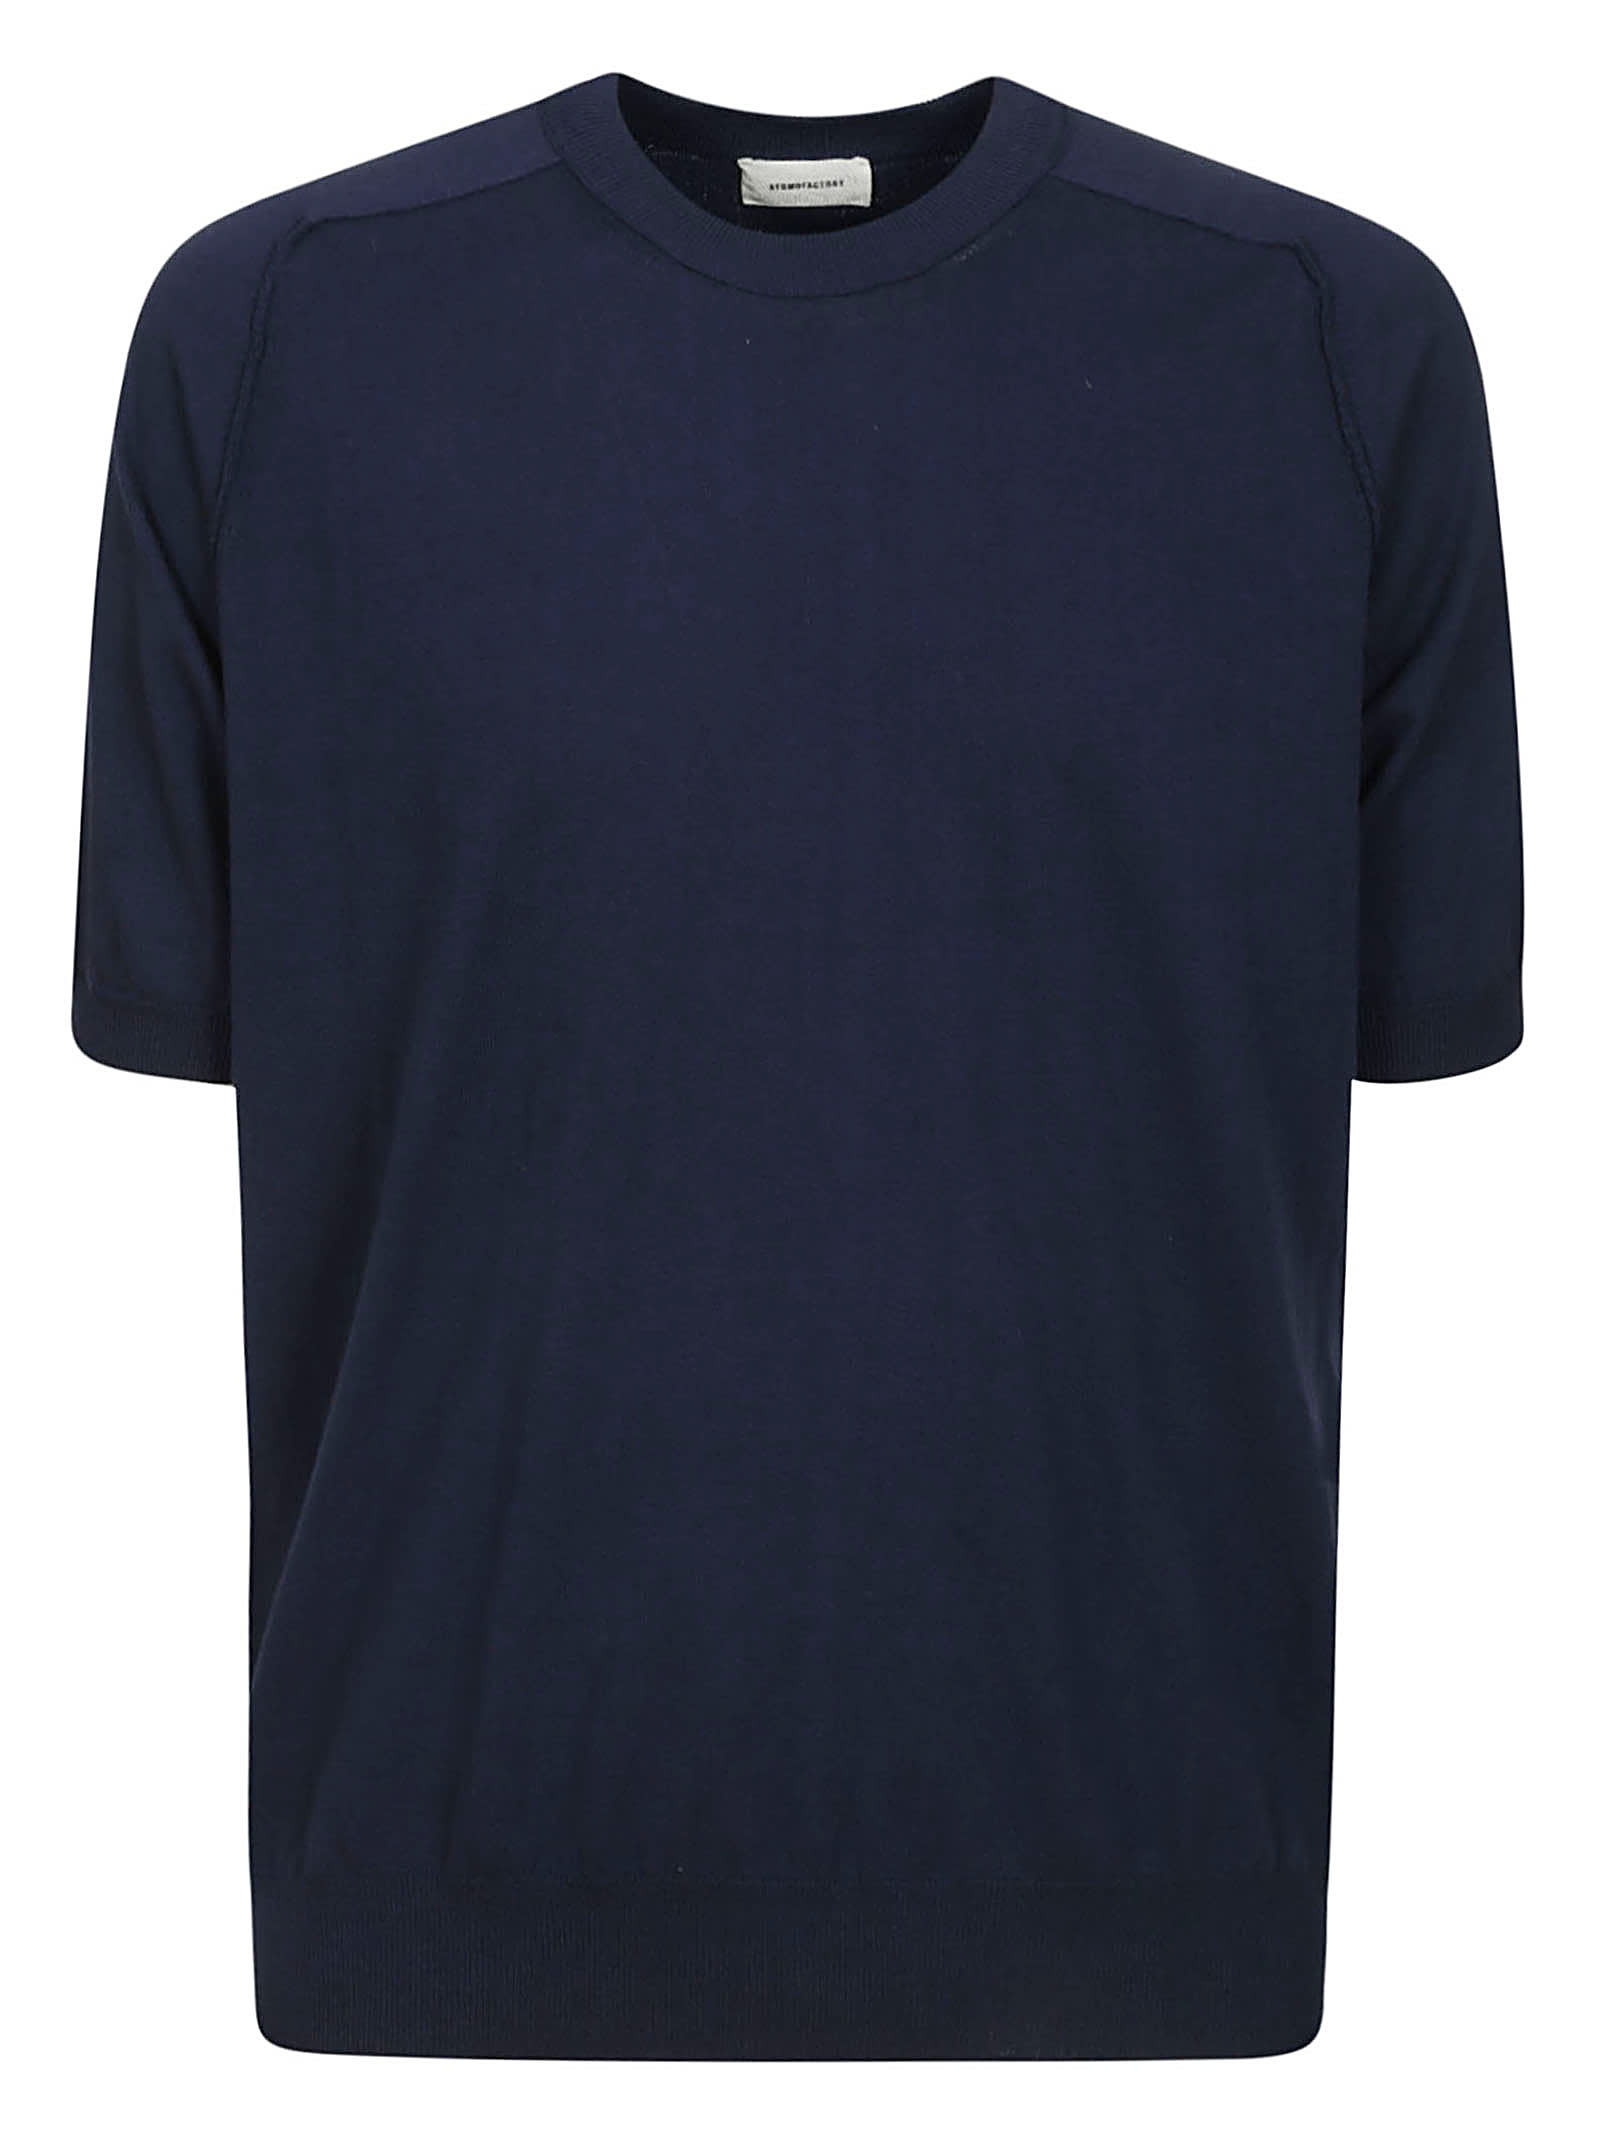 Shop Atomo Factory T-shirt Cotone Crepe In Blue Dark